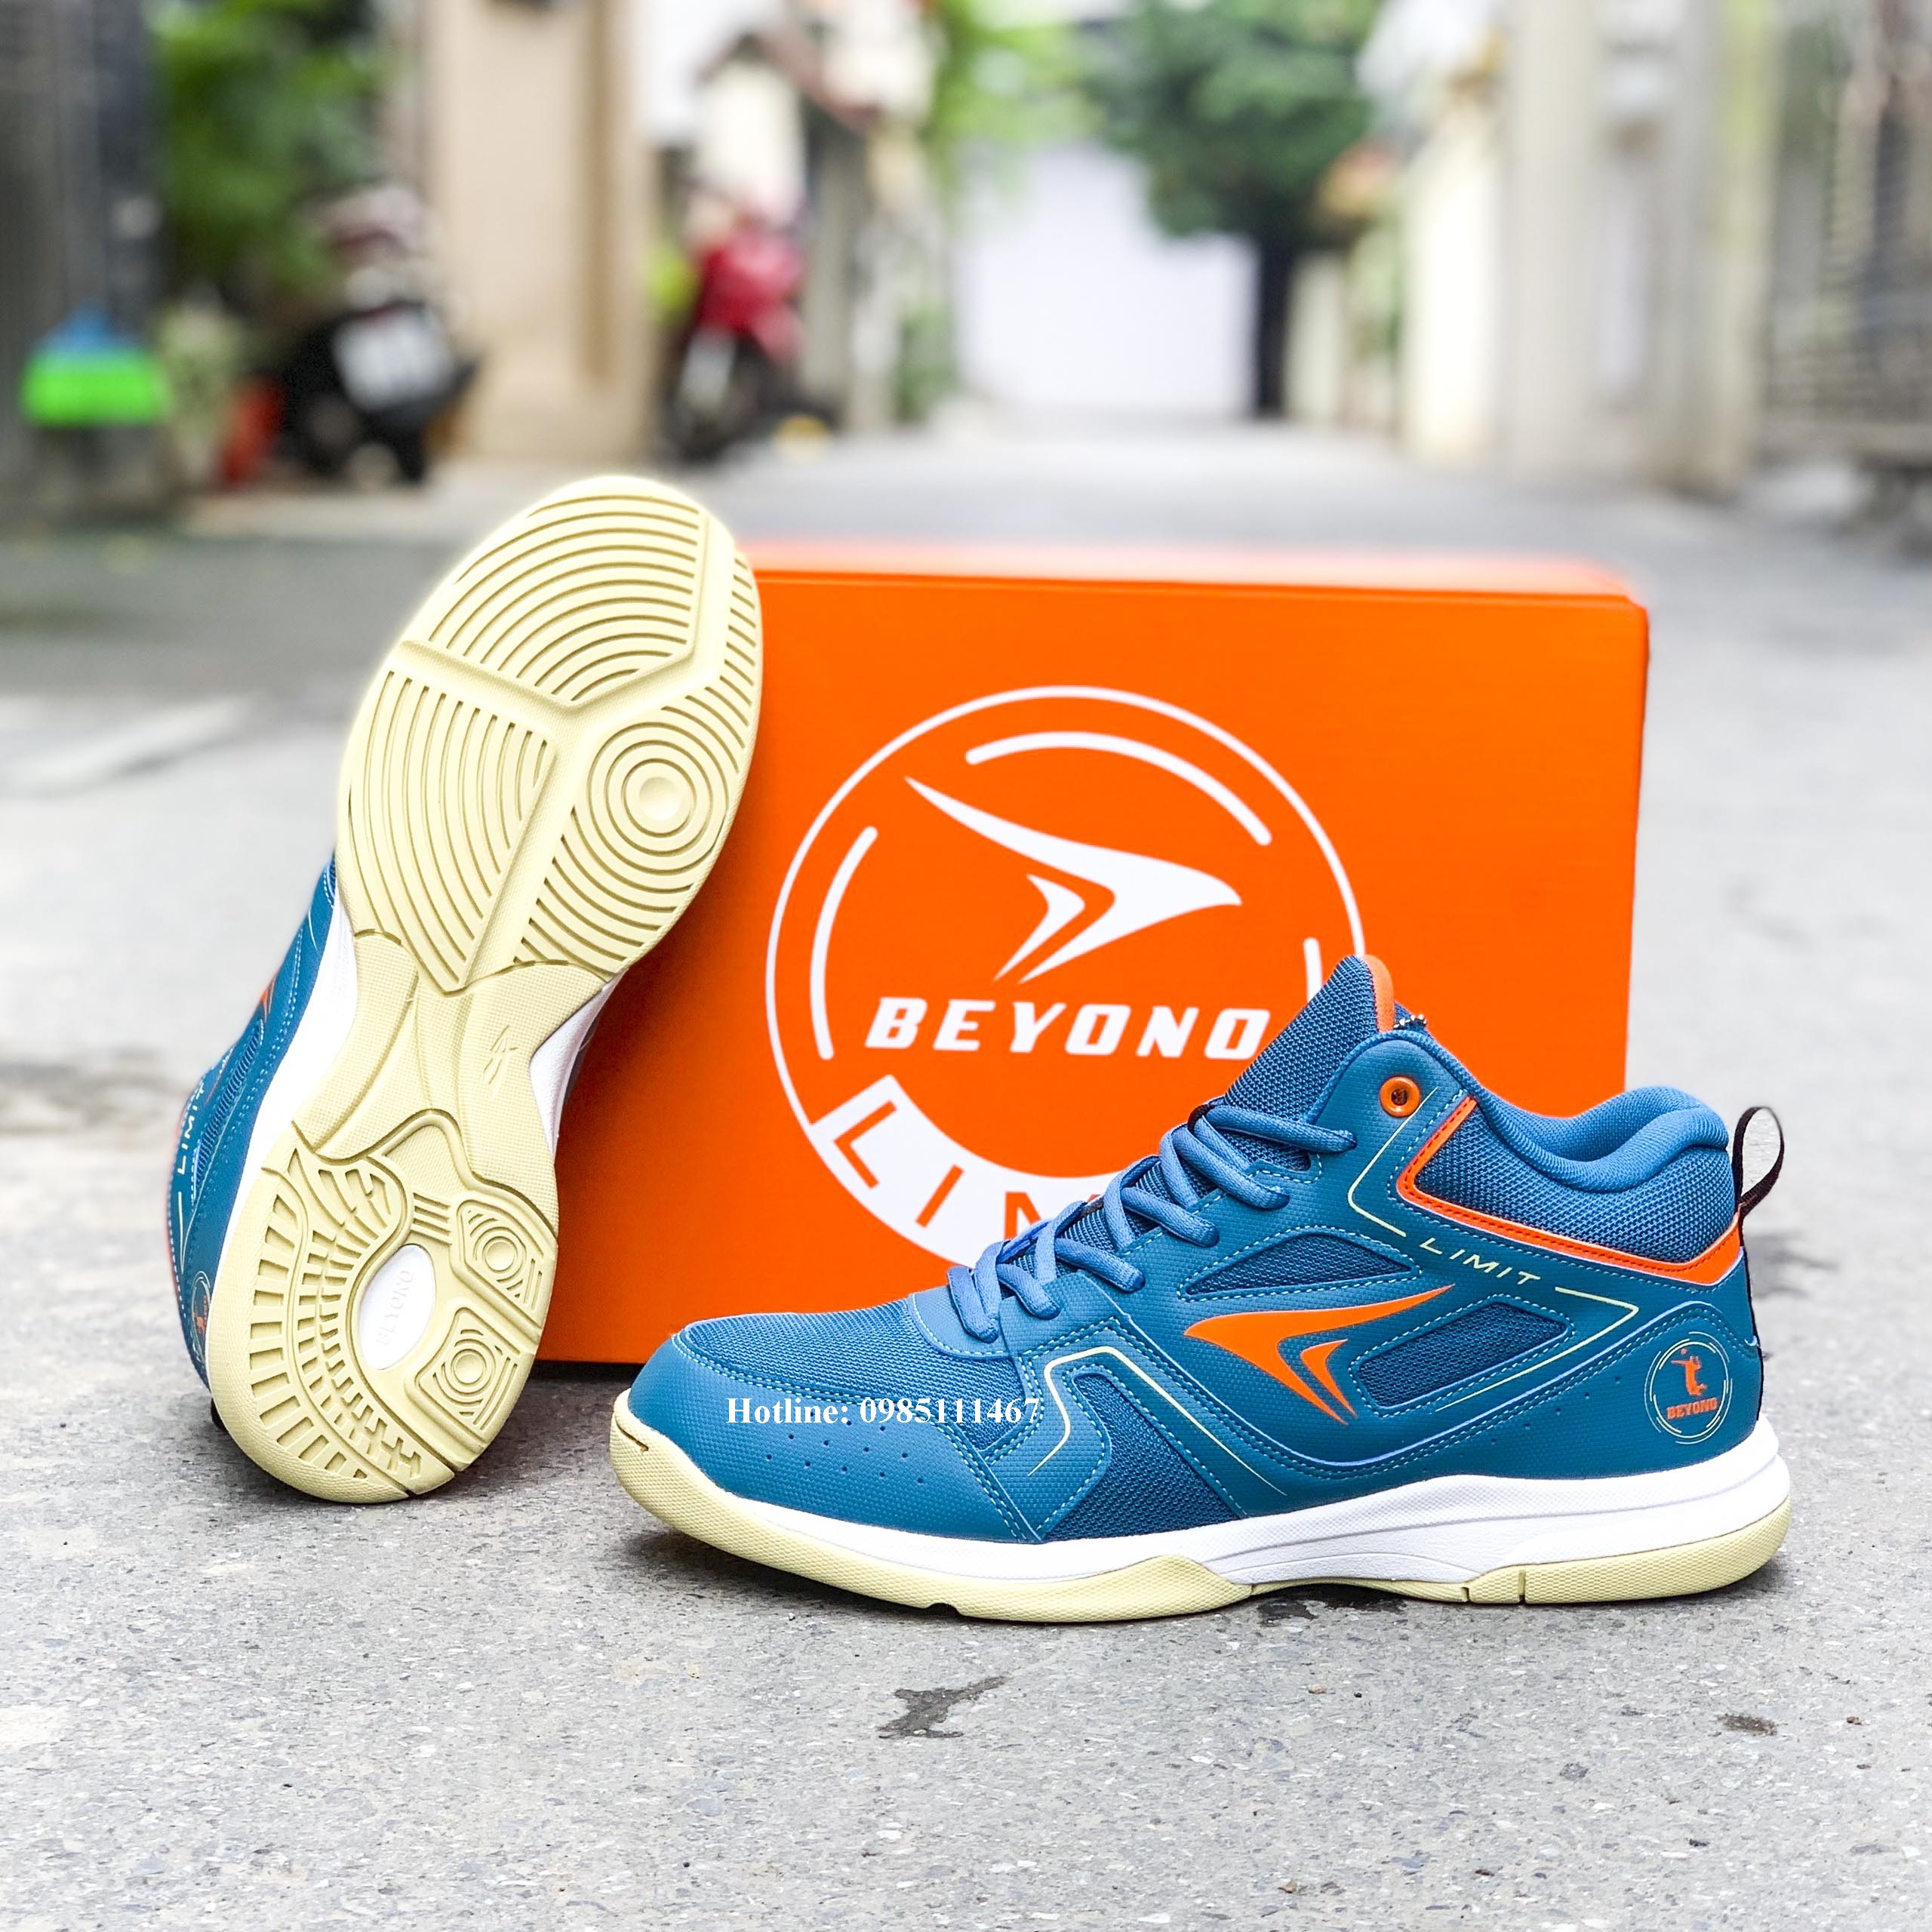 Giày Beyono chính hãng - chuyên bóng chuyền sân betong đẹp - bền - trẻ trung nặng động